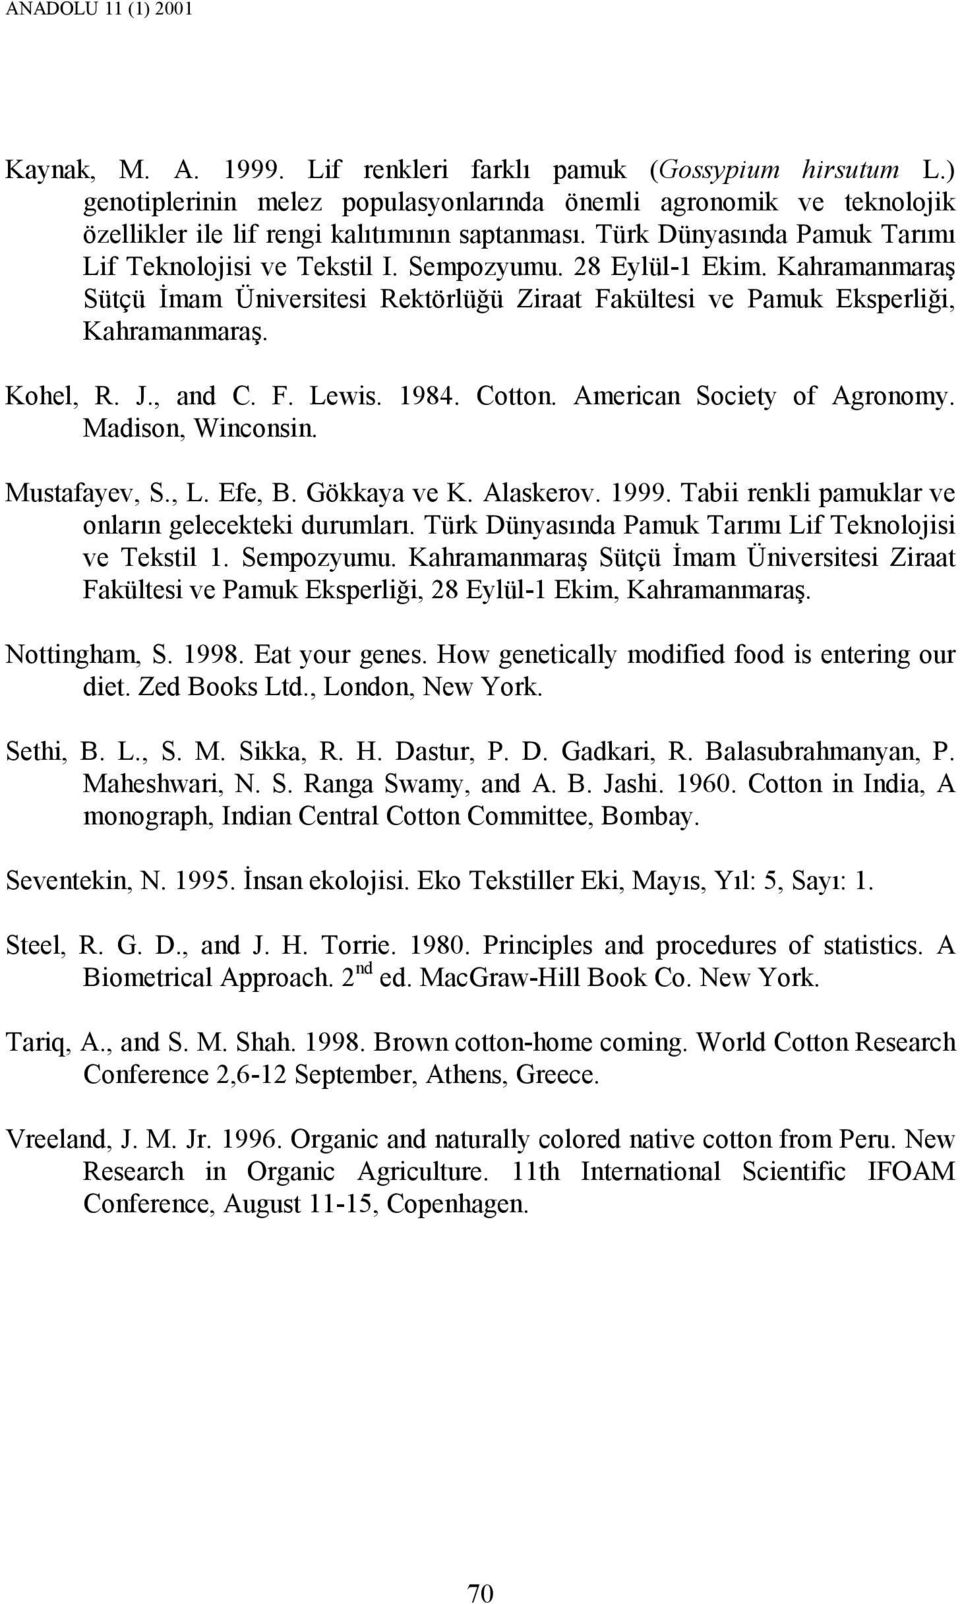 F. Lewis. 1984. Cotton. American Society of Agronomy. Madison, Winconsin. Mustafayev, S., L. Efe, B. Gökkaya ve K. Alaskerov. 1999. Tabii renkli pamuklar ve onların gelecekteki durumları.